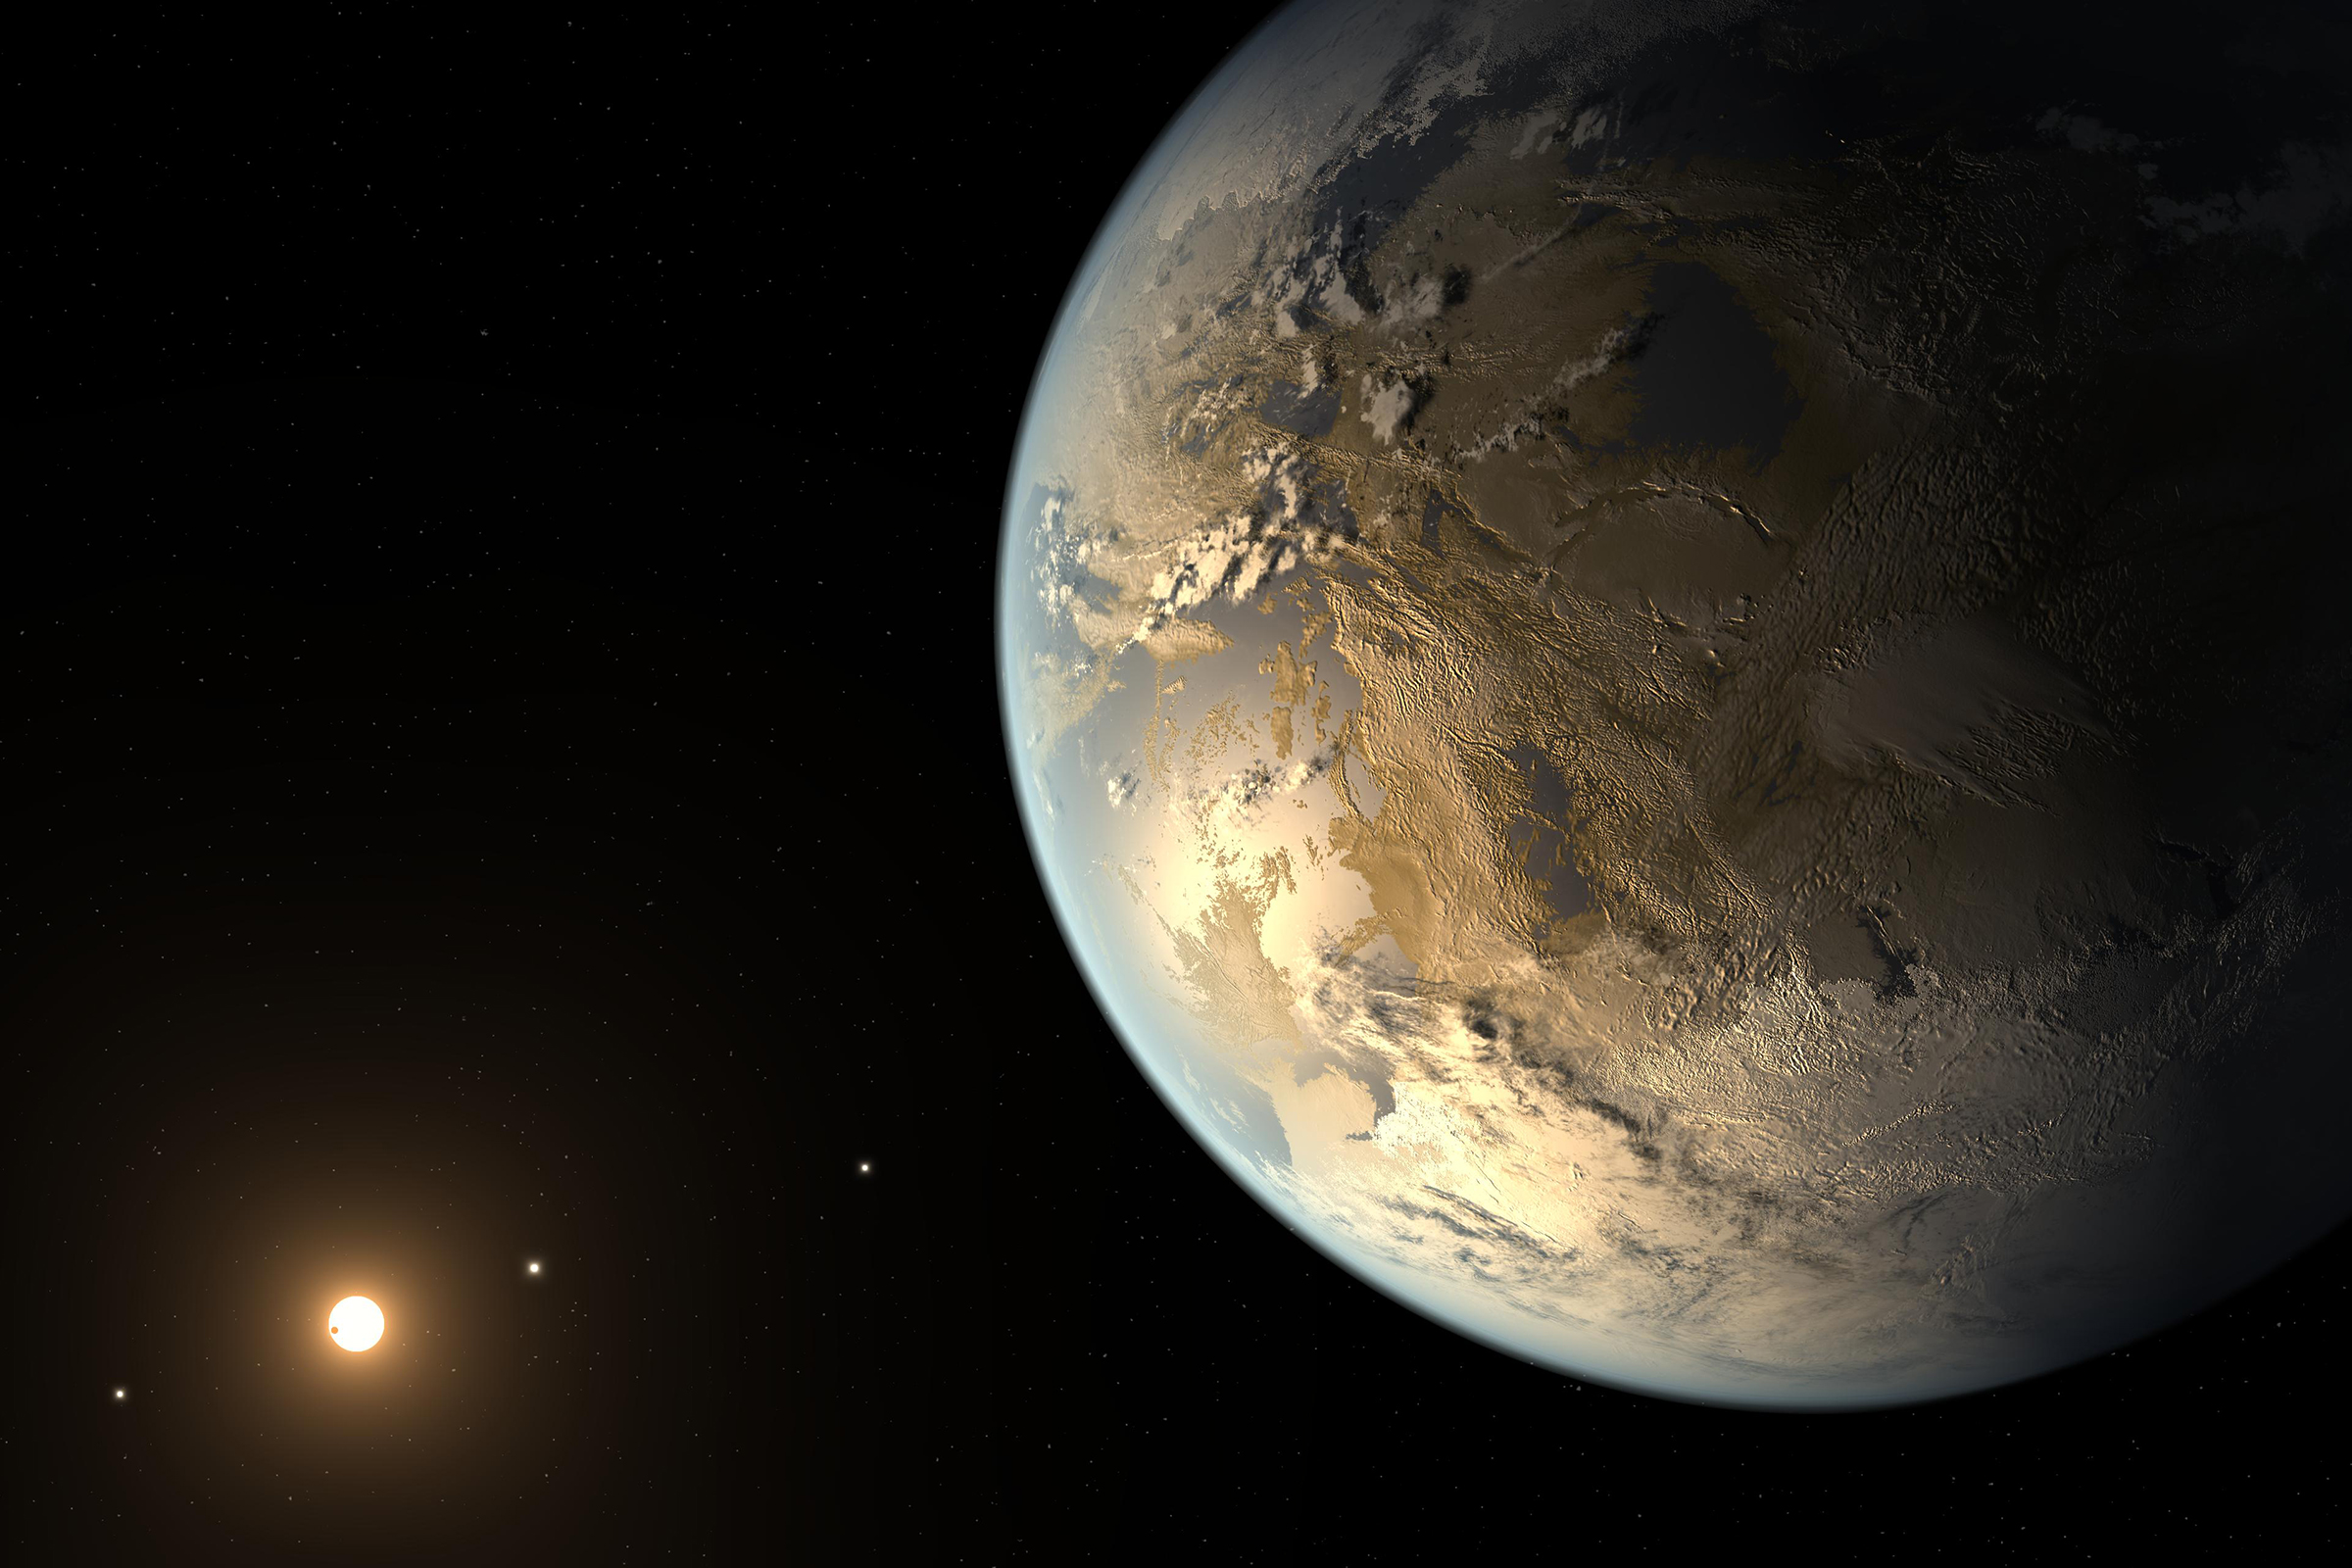 Размеры Kepler-186f максимально совпадают с размерам Земли. О планете известно не слишком много: она находится в системе красного карлика Kepler-186 в созвездии Лебедя на расстоянии 492 световых года от Земли. Ее масса, плотность и состав не известны.
